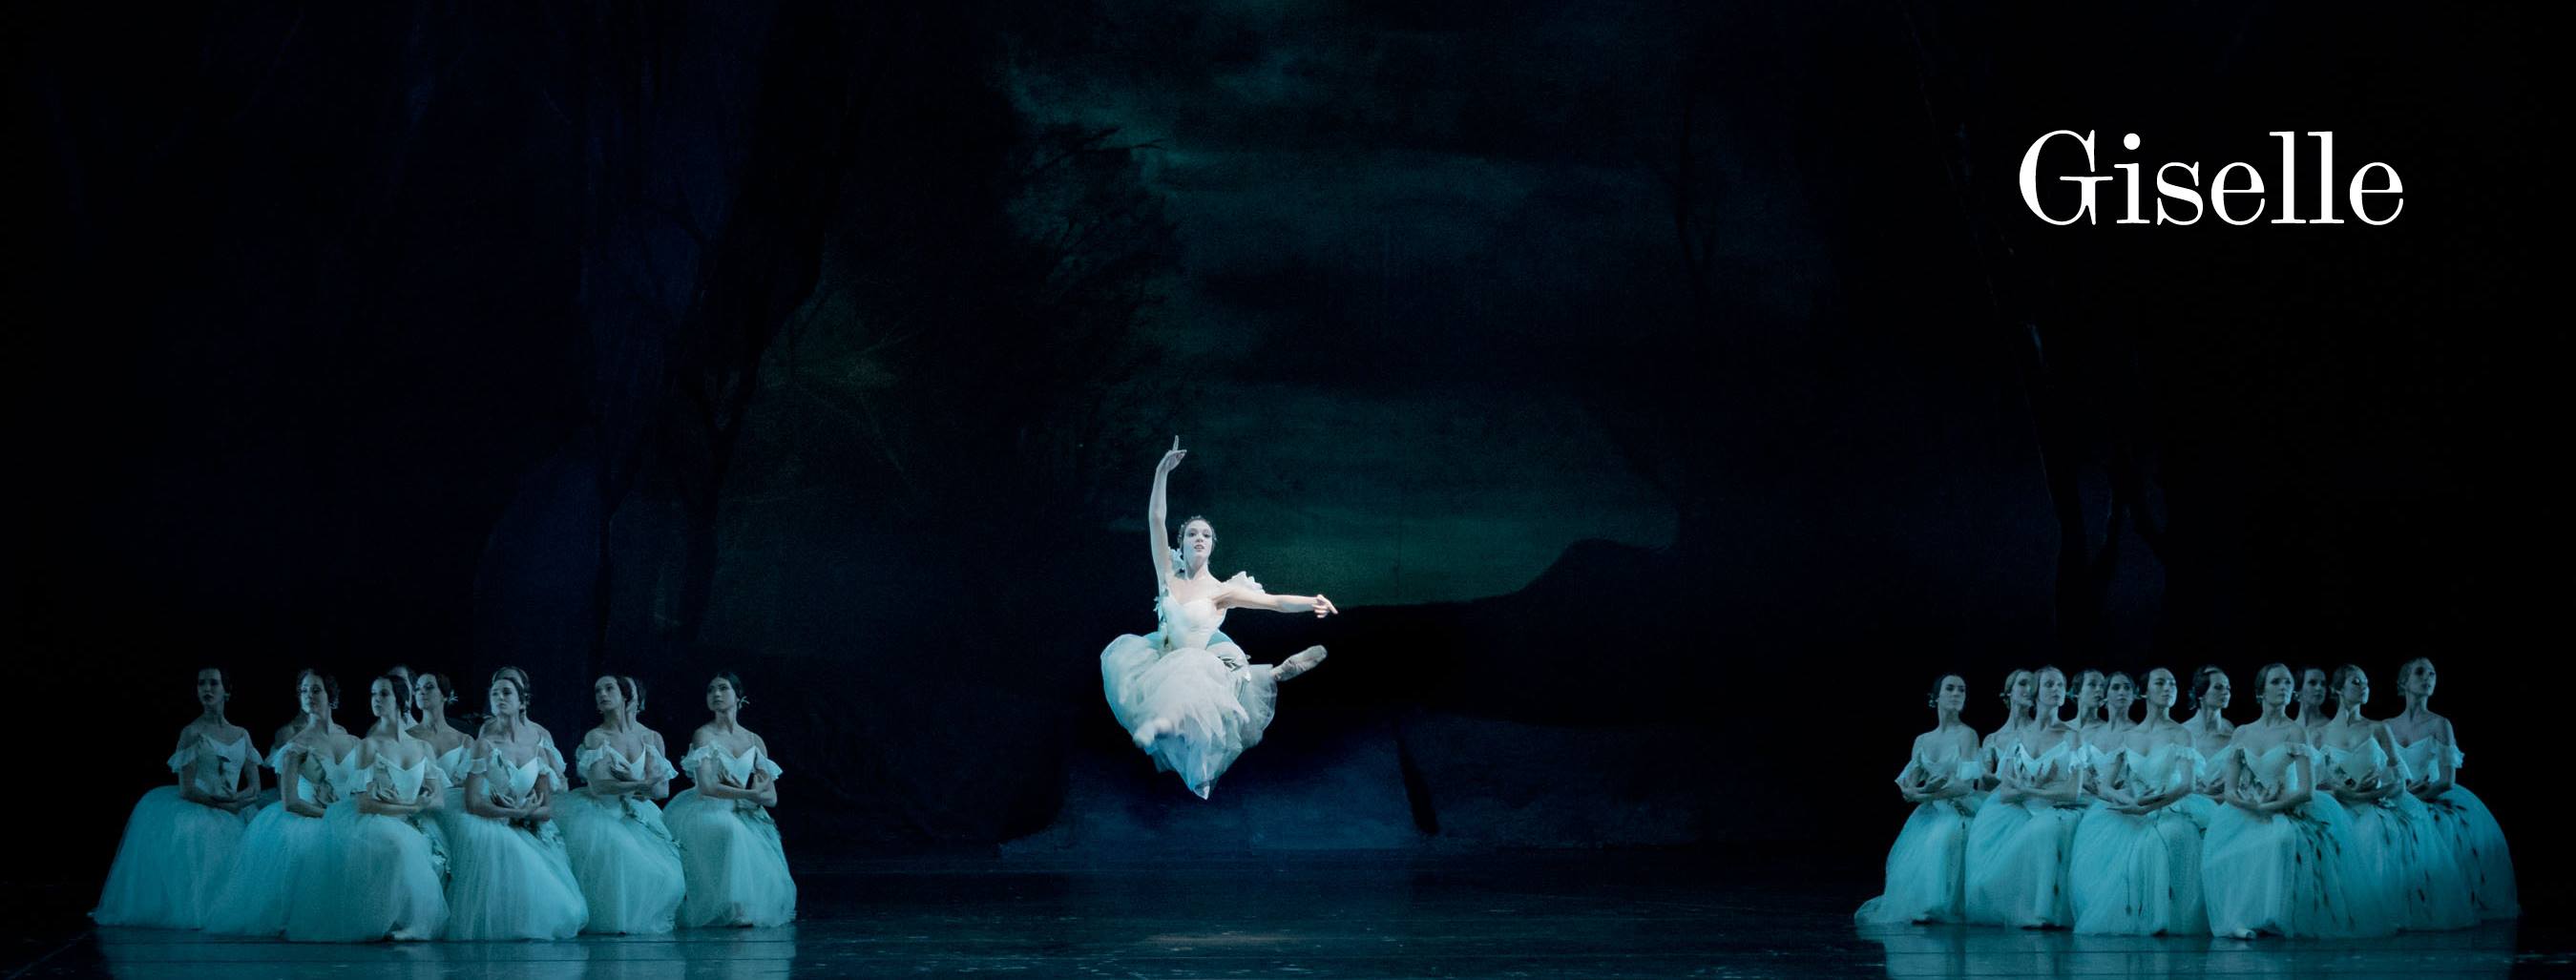 La Giselle de Peter Wright. Photo: Jack Devant